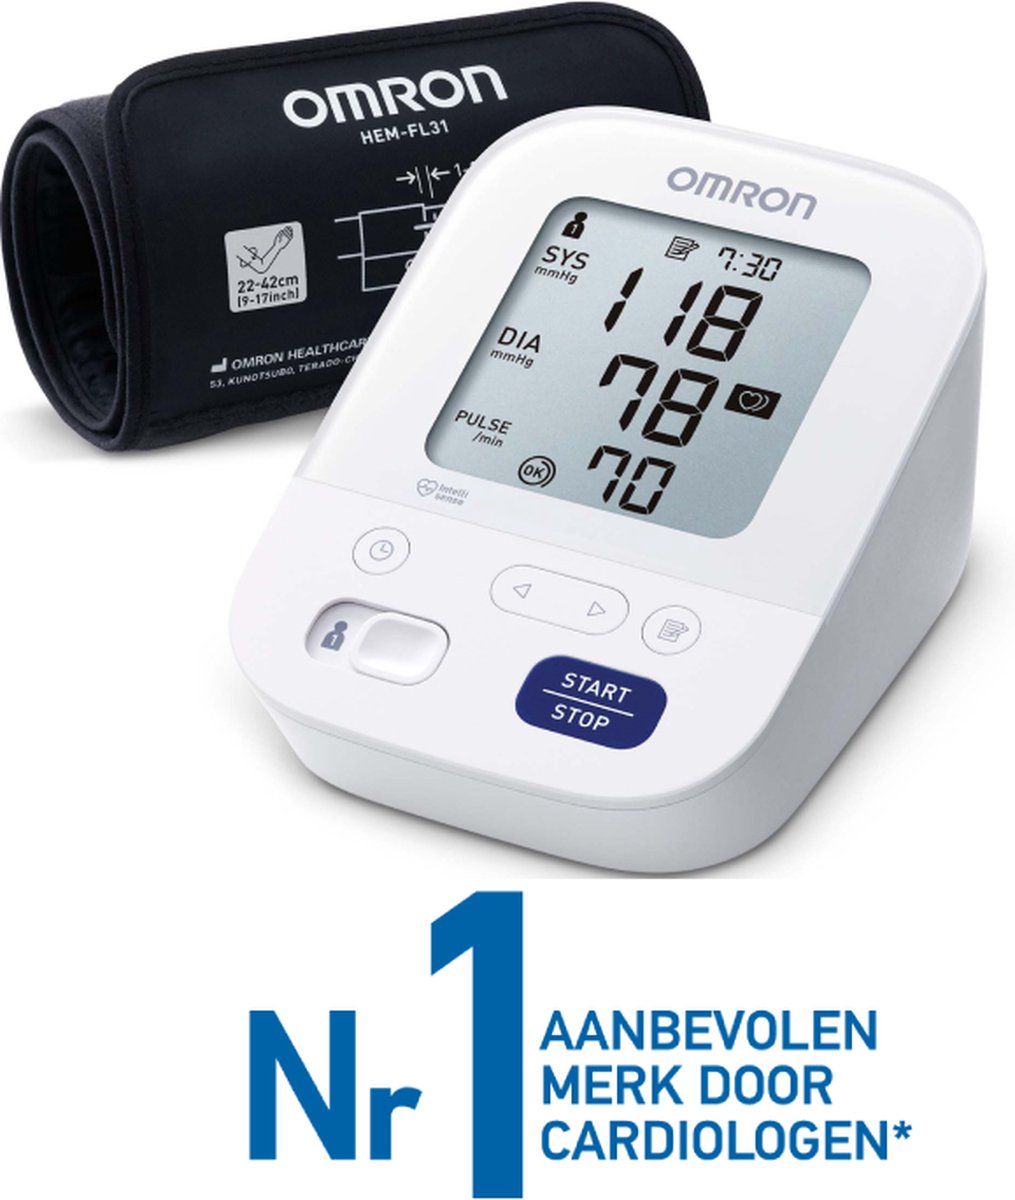 OMRON X3 Comfort Bloeddrukmeter Bovenarm - Aanbevolen door Hartstichting - Blood Pressure Monitor met Hartslagmeter – Onregelmatige Hartslag - 22 tot 42 cm Manchet – 5 jaar Garantie - Omron